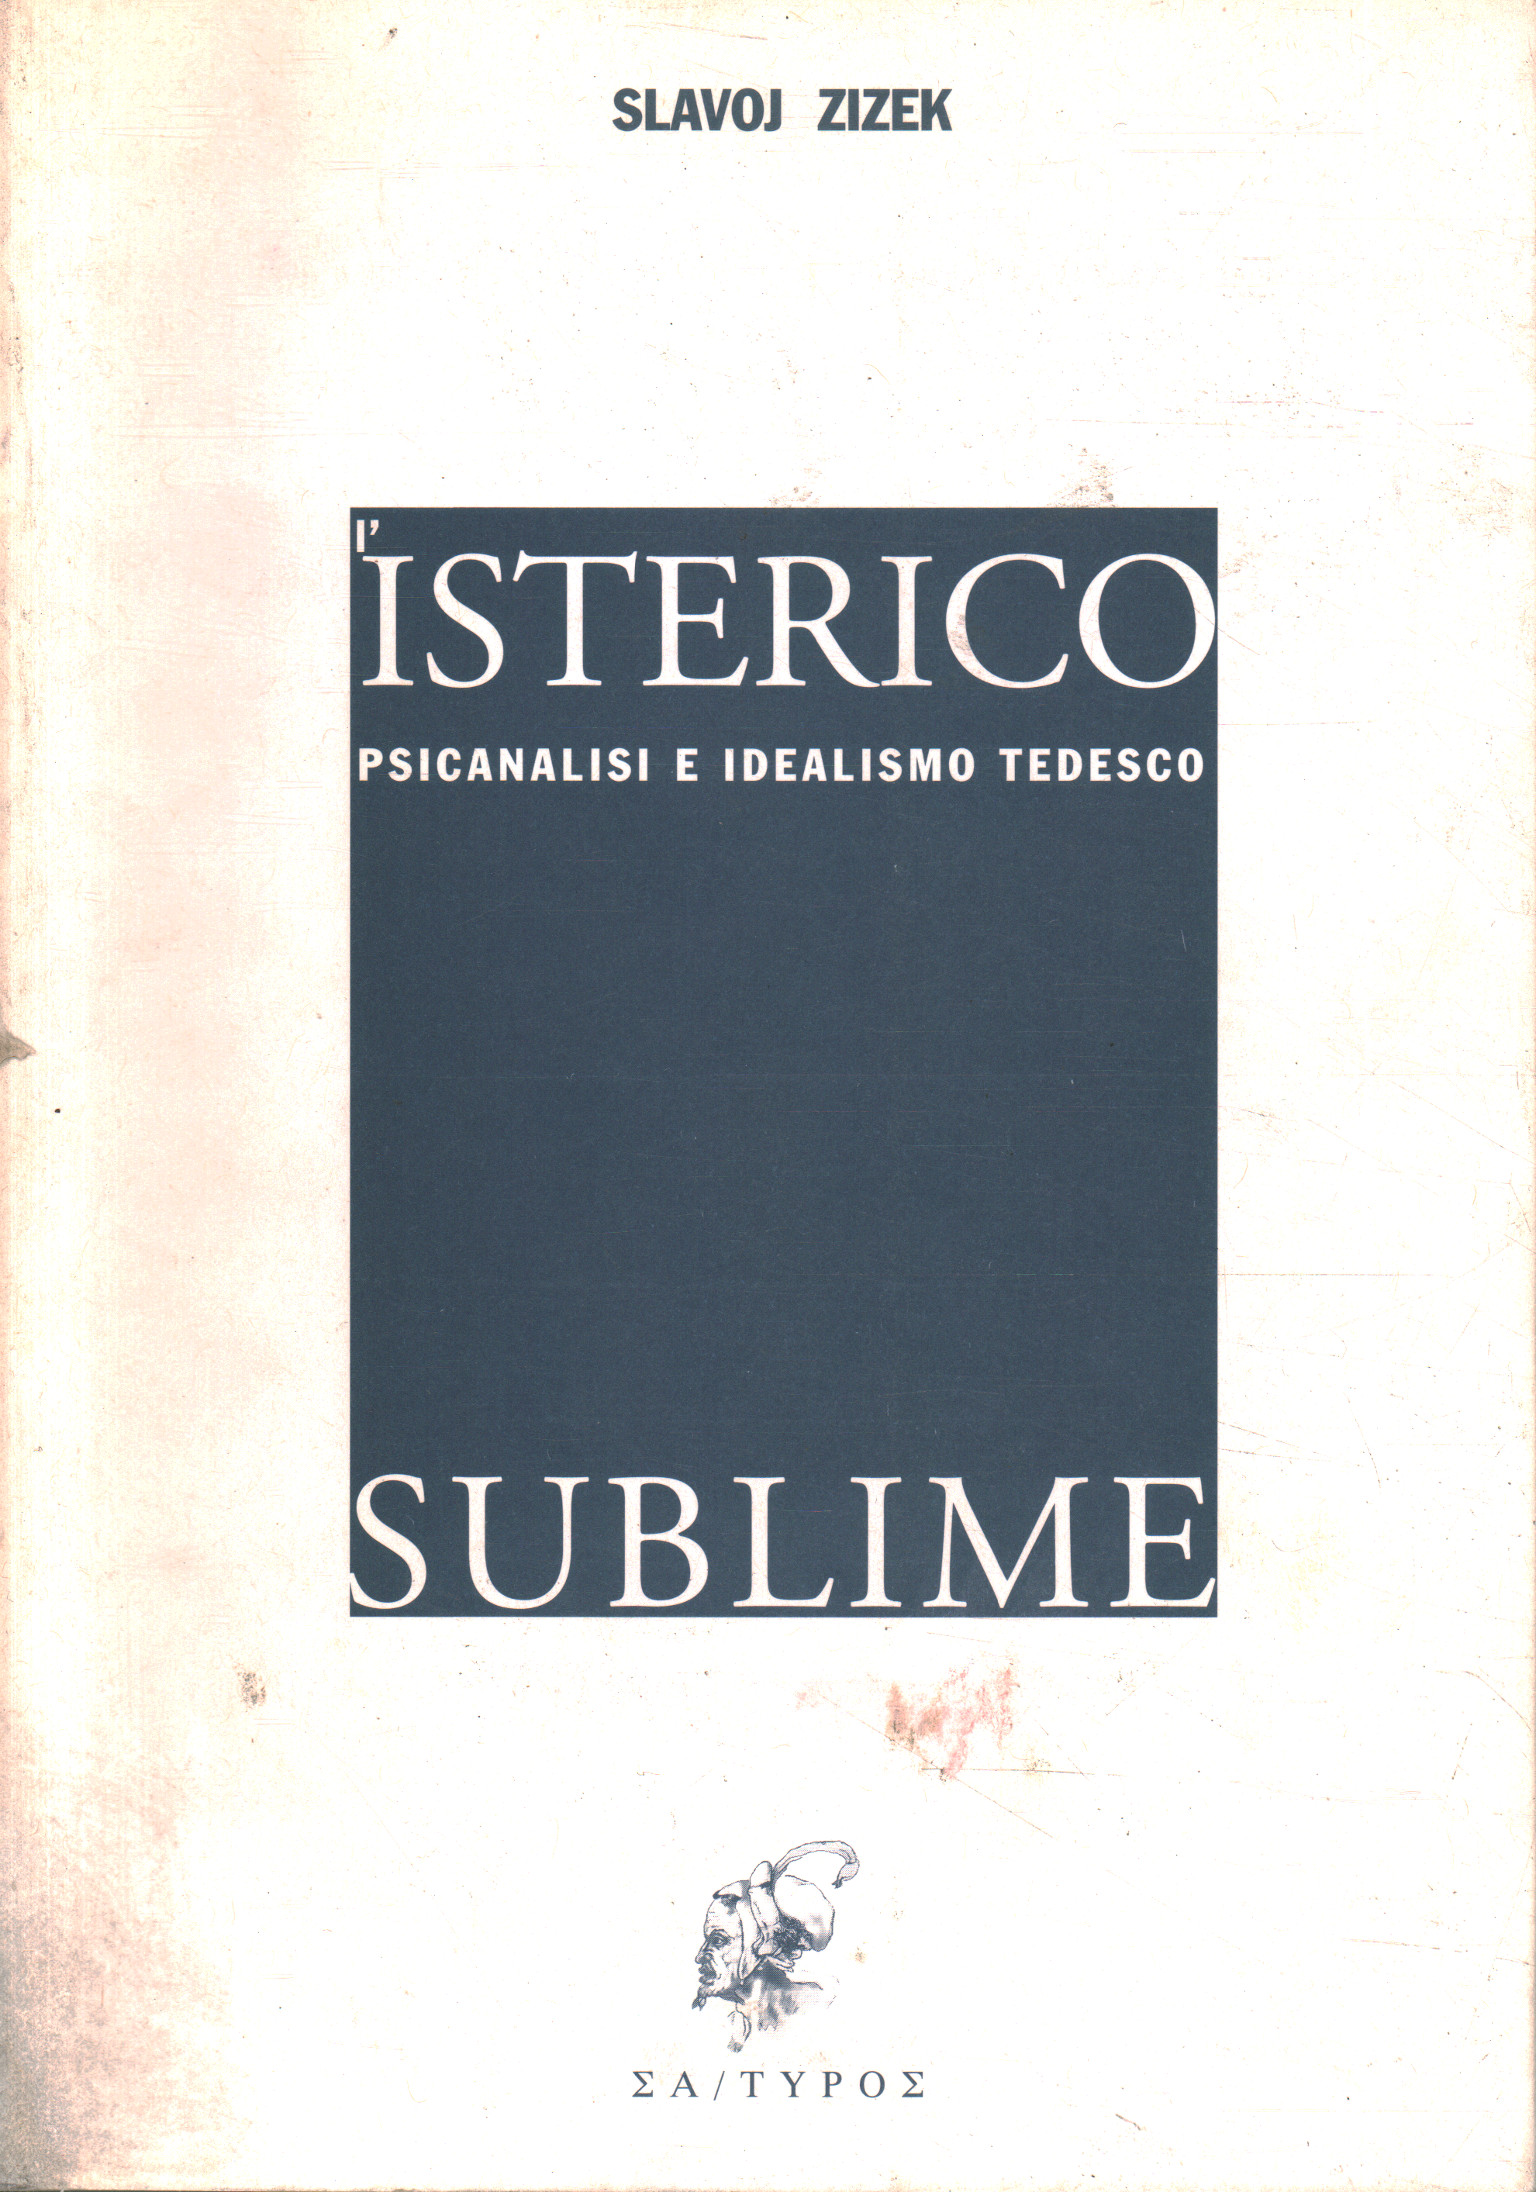 The sublime hysteric, Slavoj Žižek